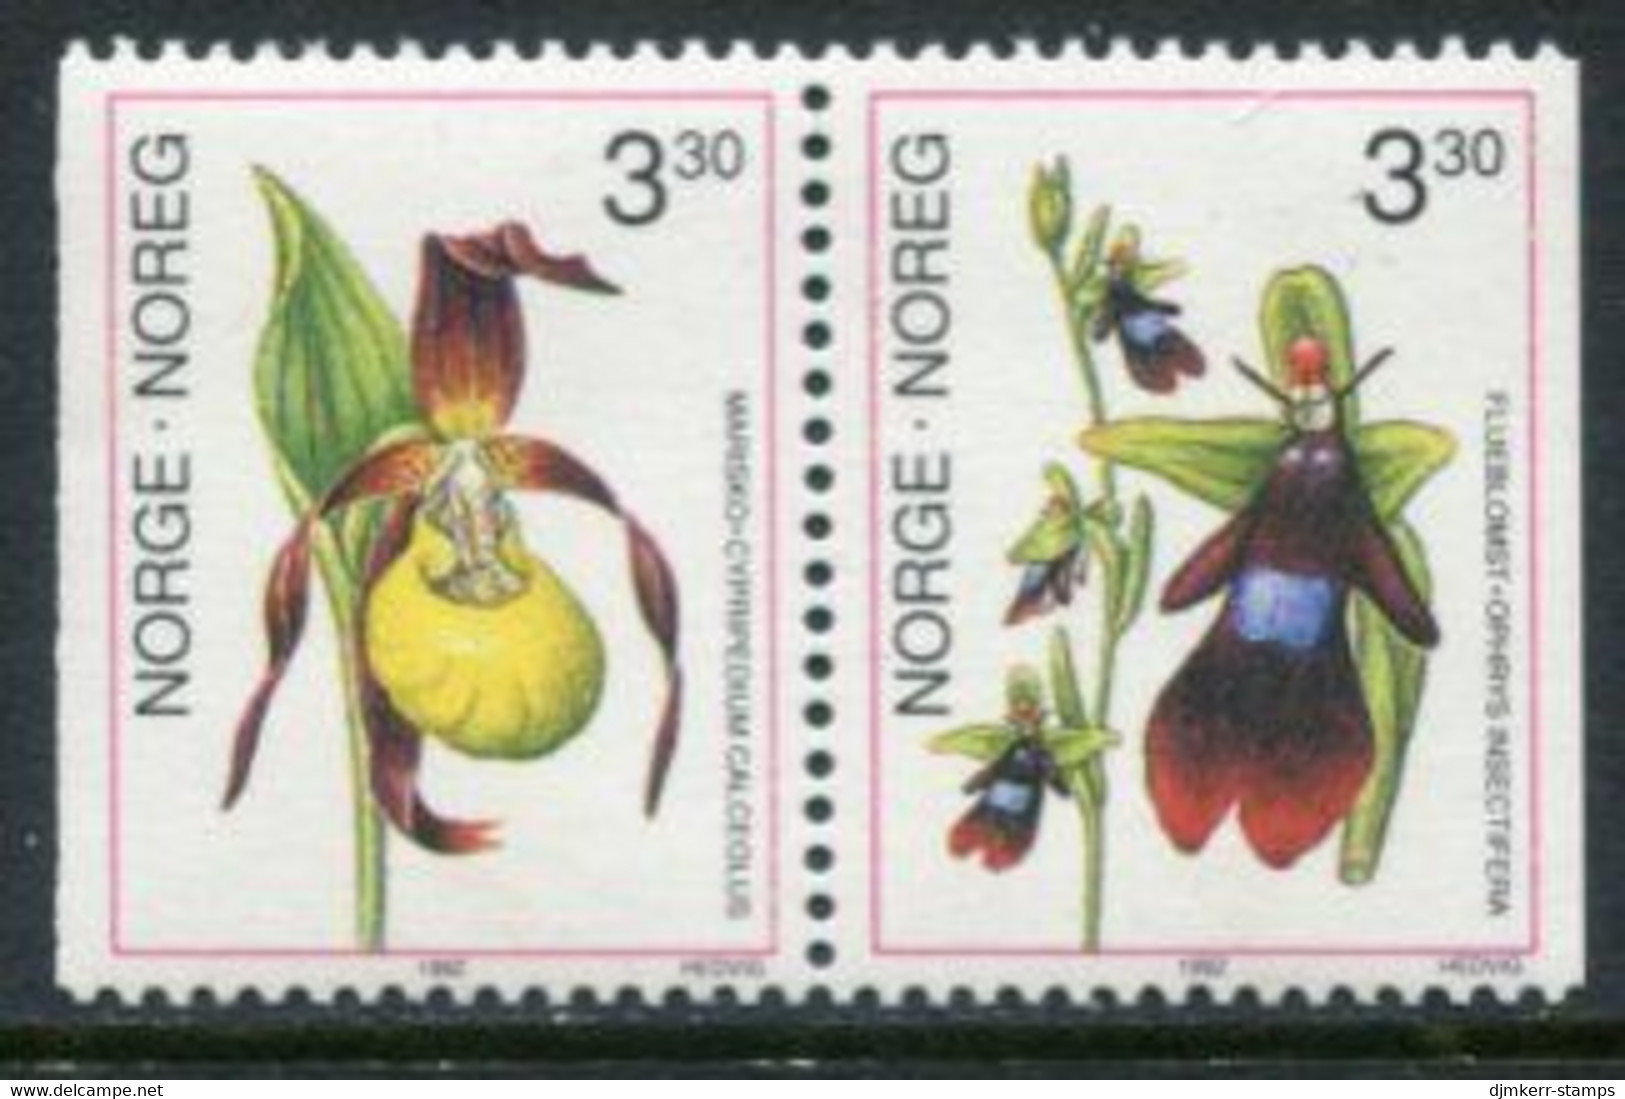 NORWAY 1992 Orchids MNH / **.   Michel 1088-89 - Ongebruikt